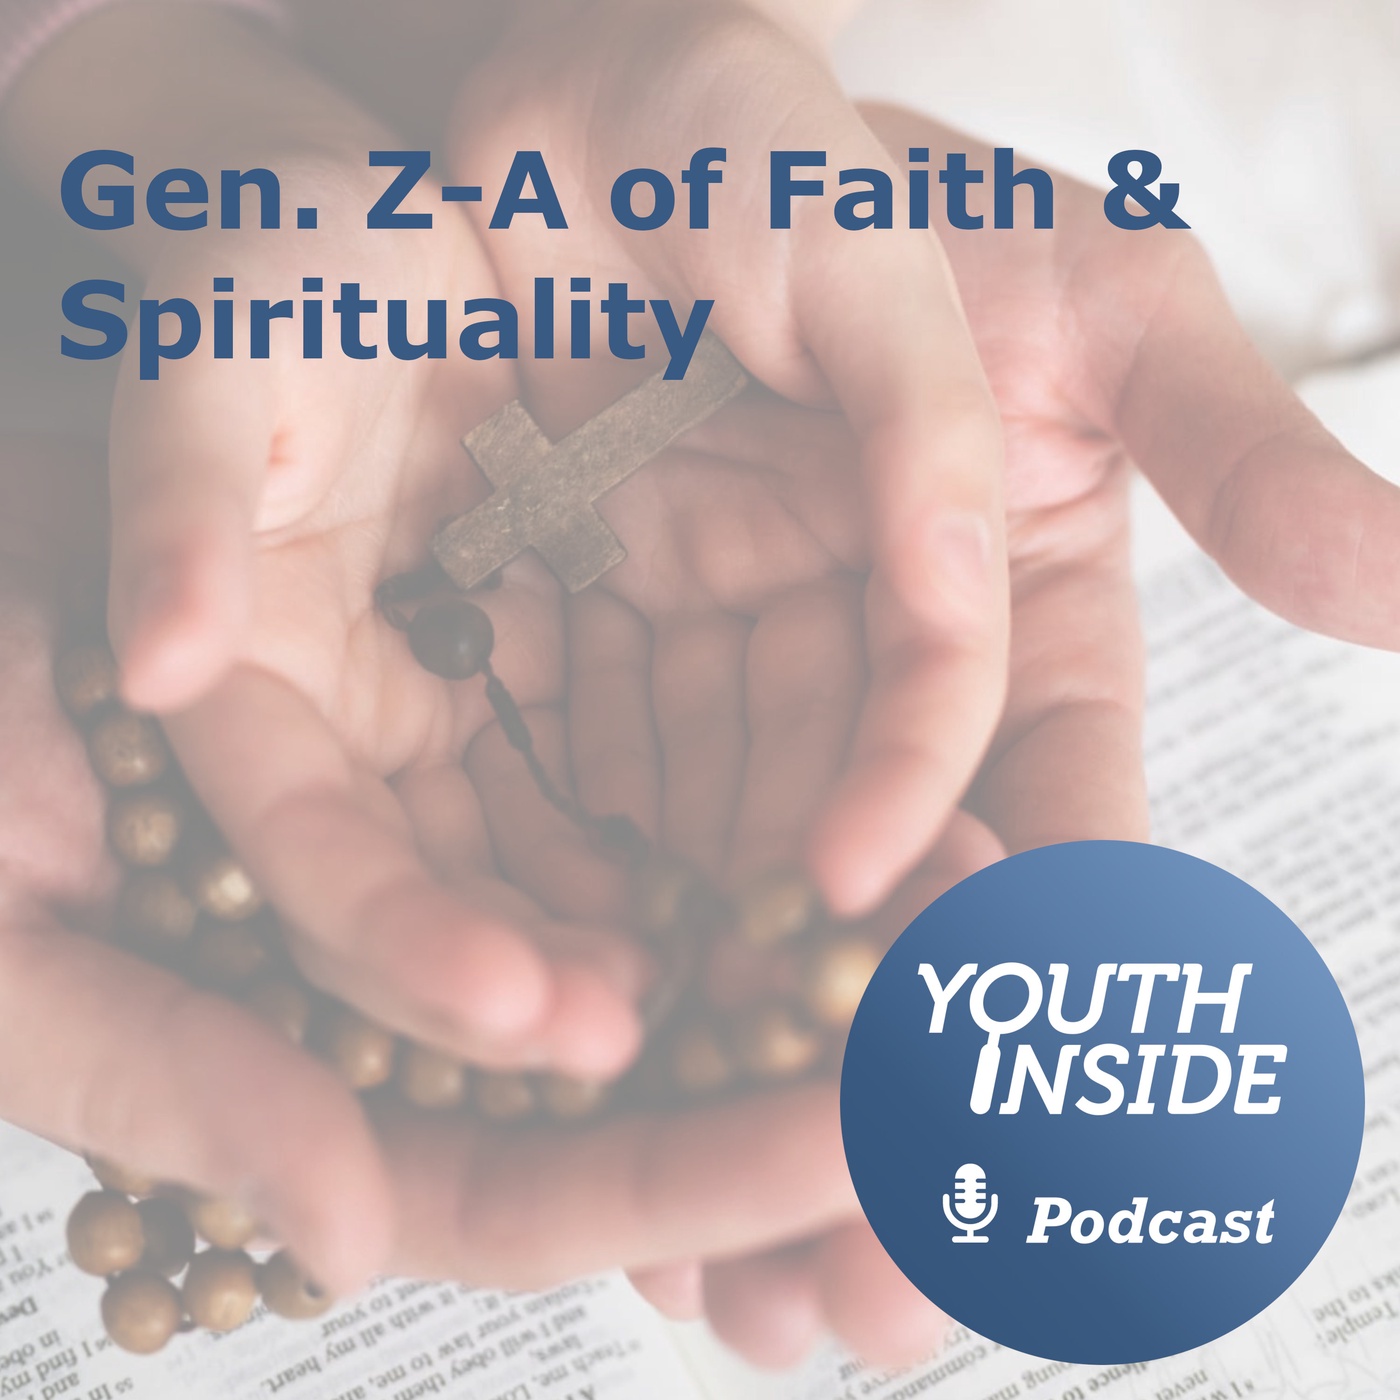 Gen Z-A of Faith & Spirituality